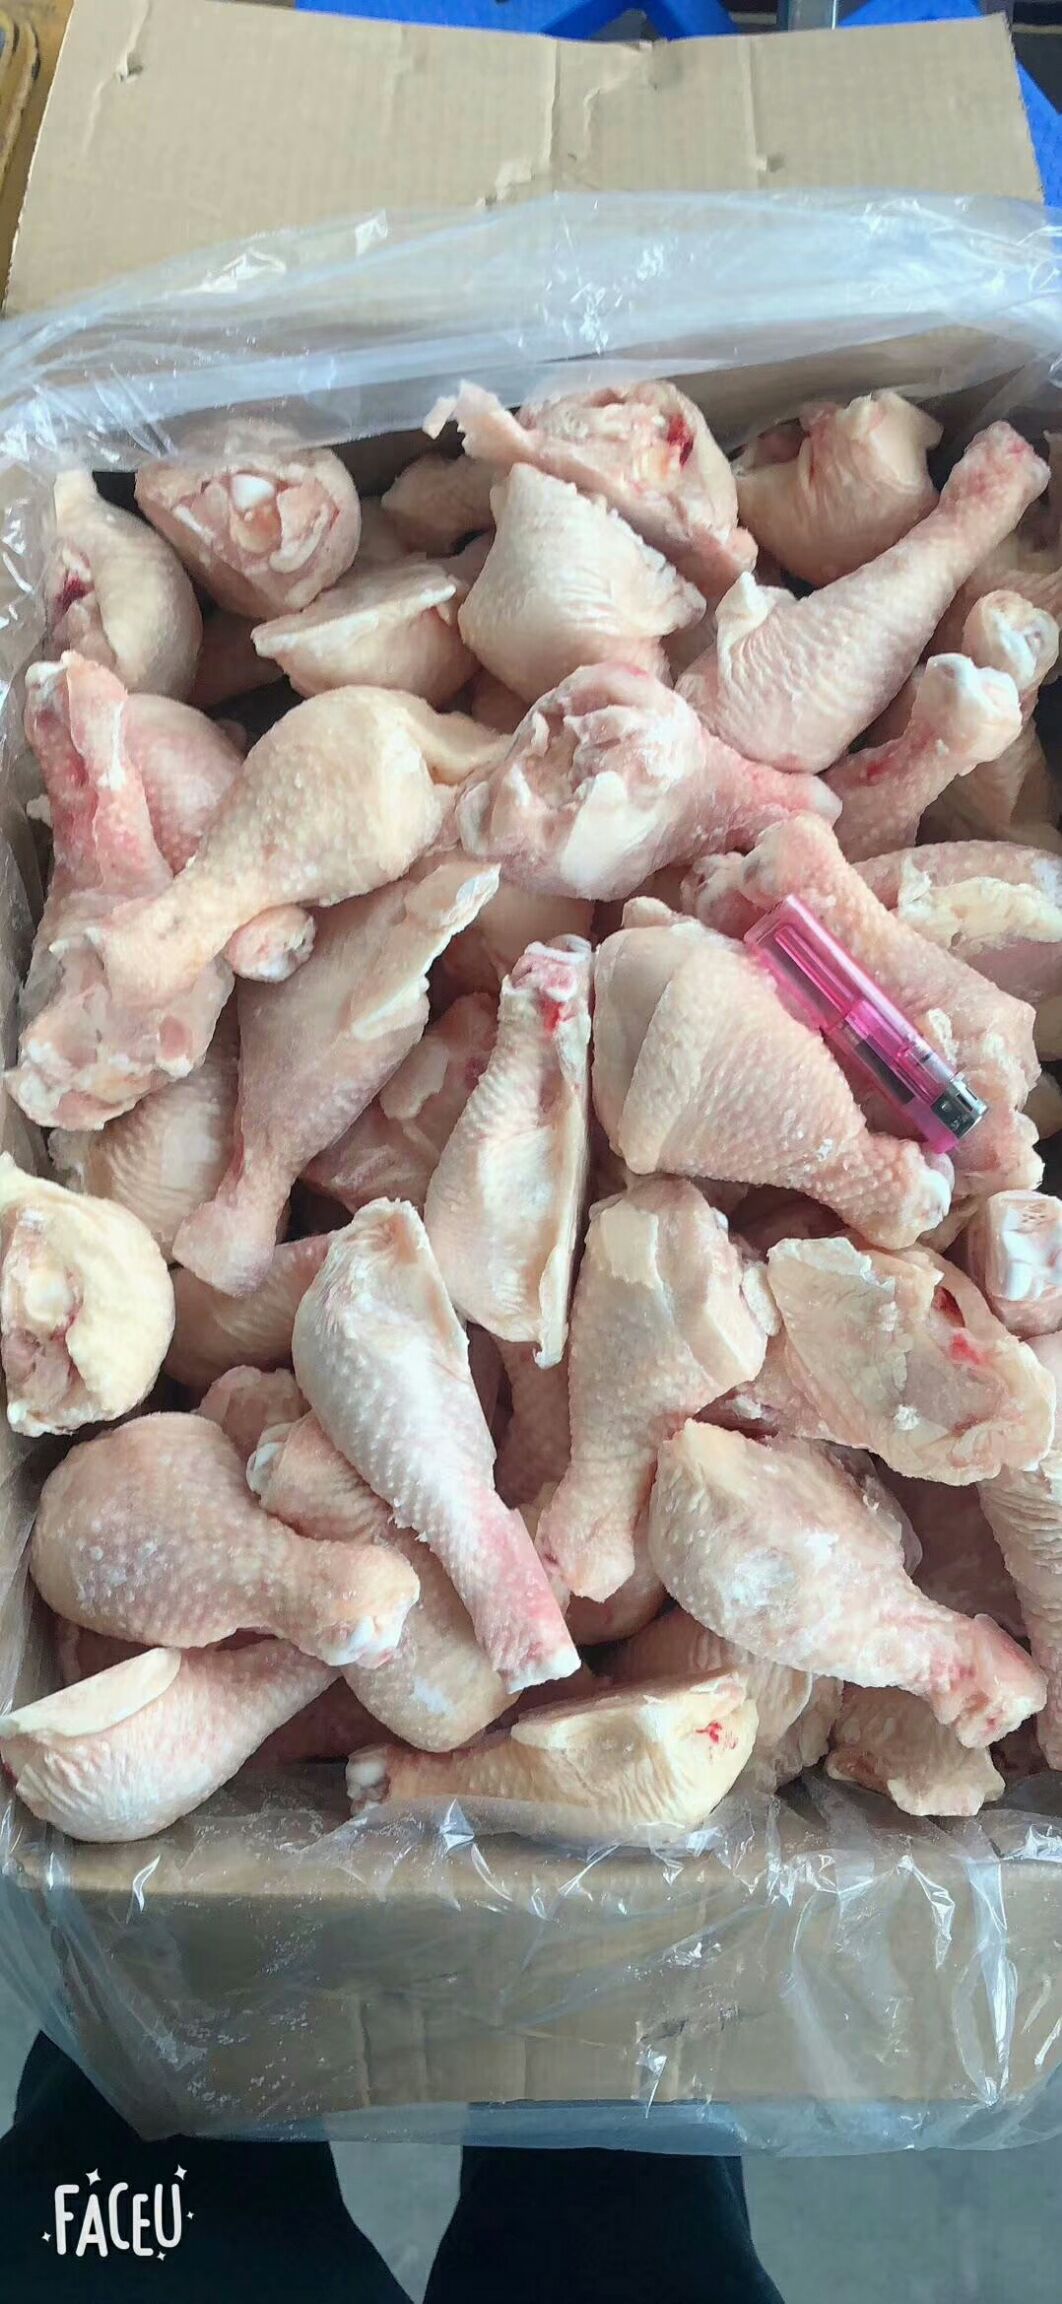 [鸡肉类批发]鸡肉类 冷冻 价格205元/箱 - 惠农网